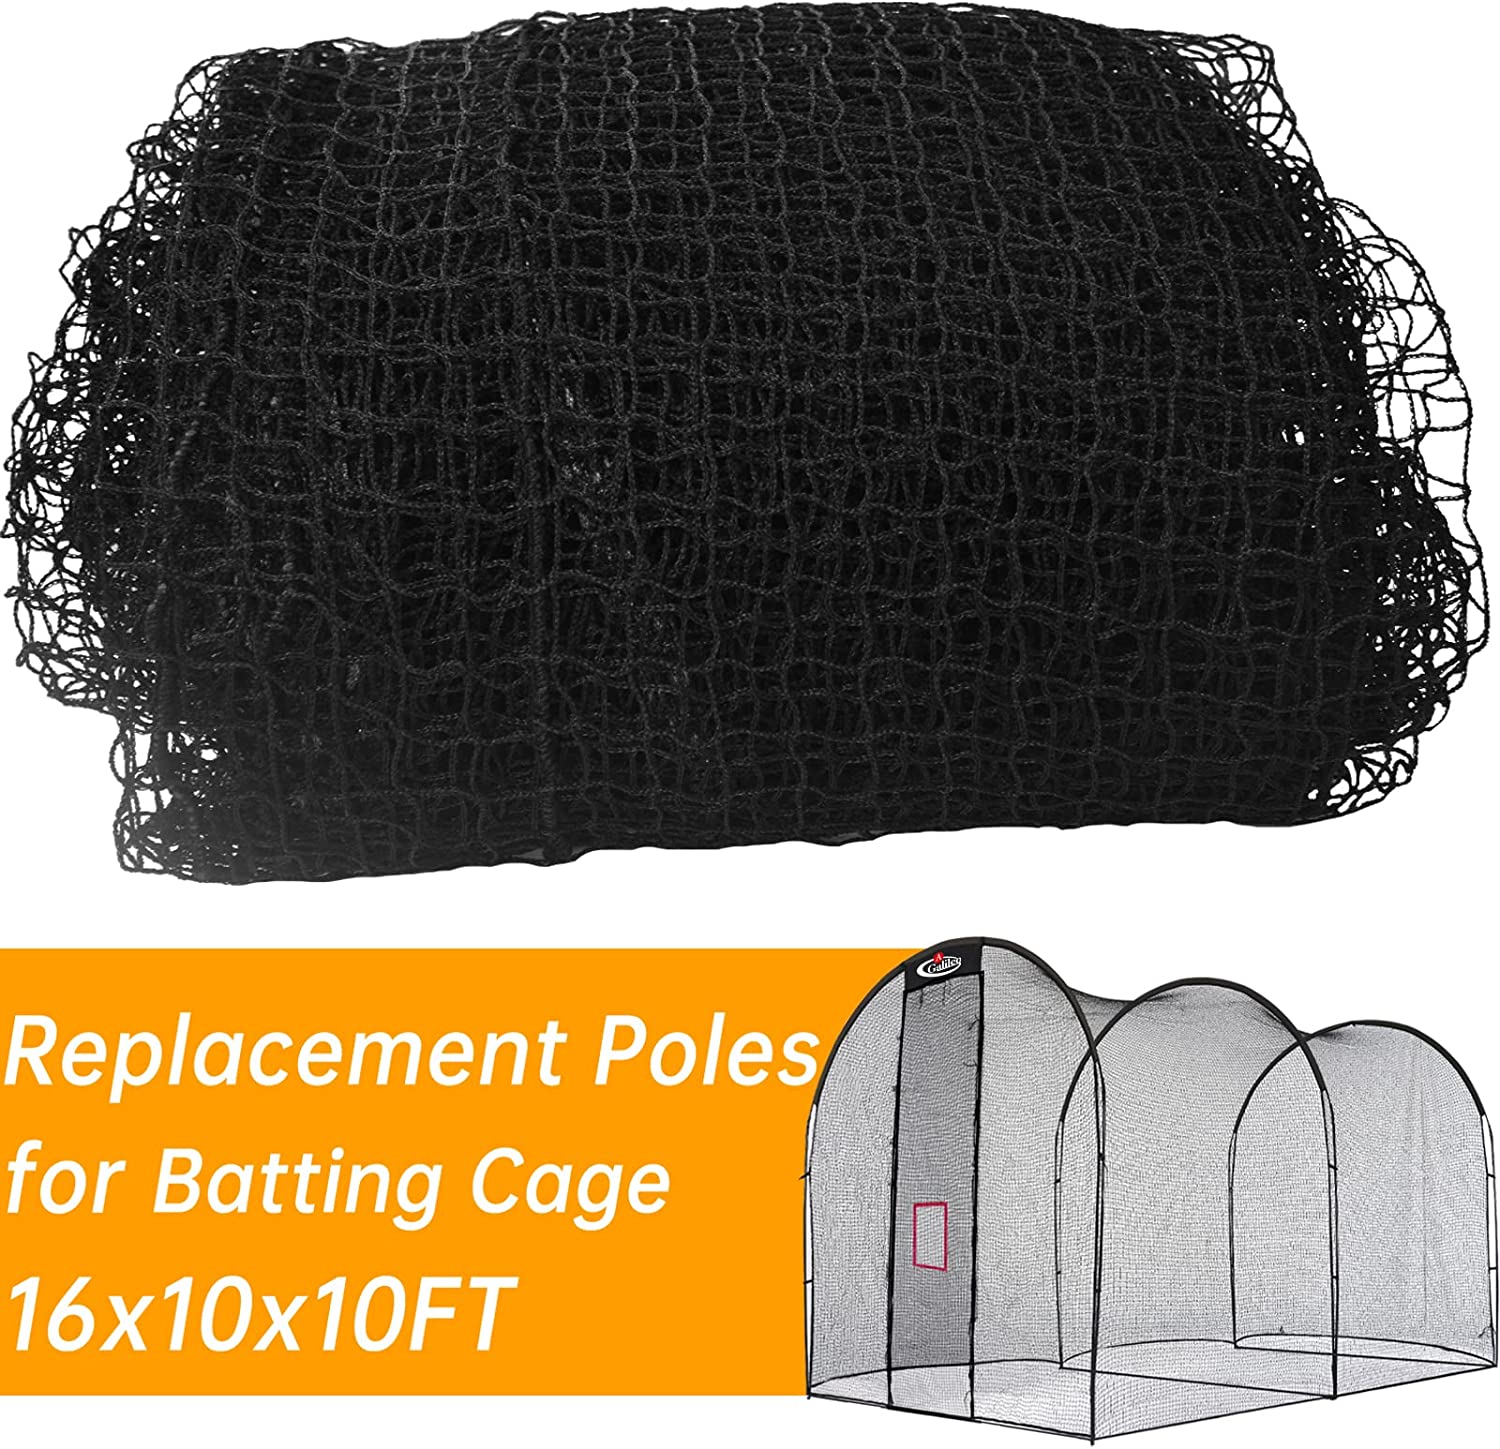 Remplacement du filet de cage de frappeur de baseball Gagalileo 16x10x10FT